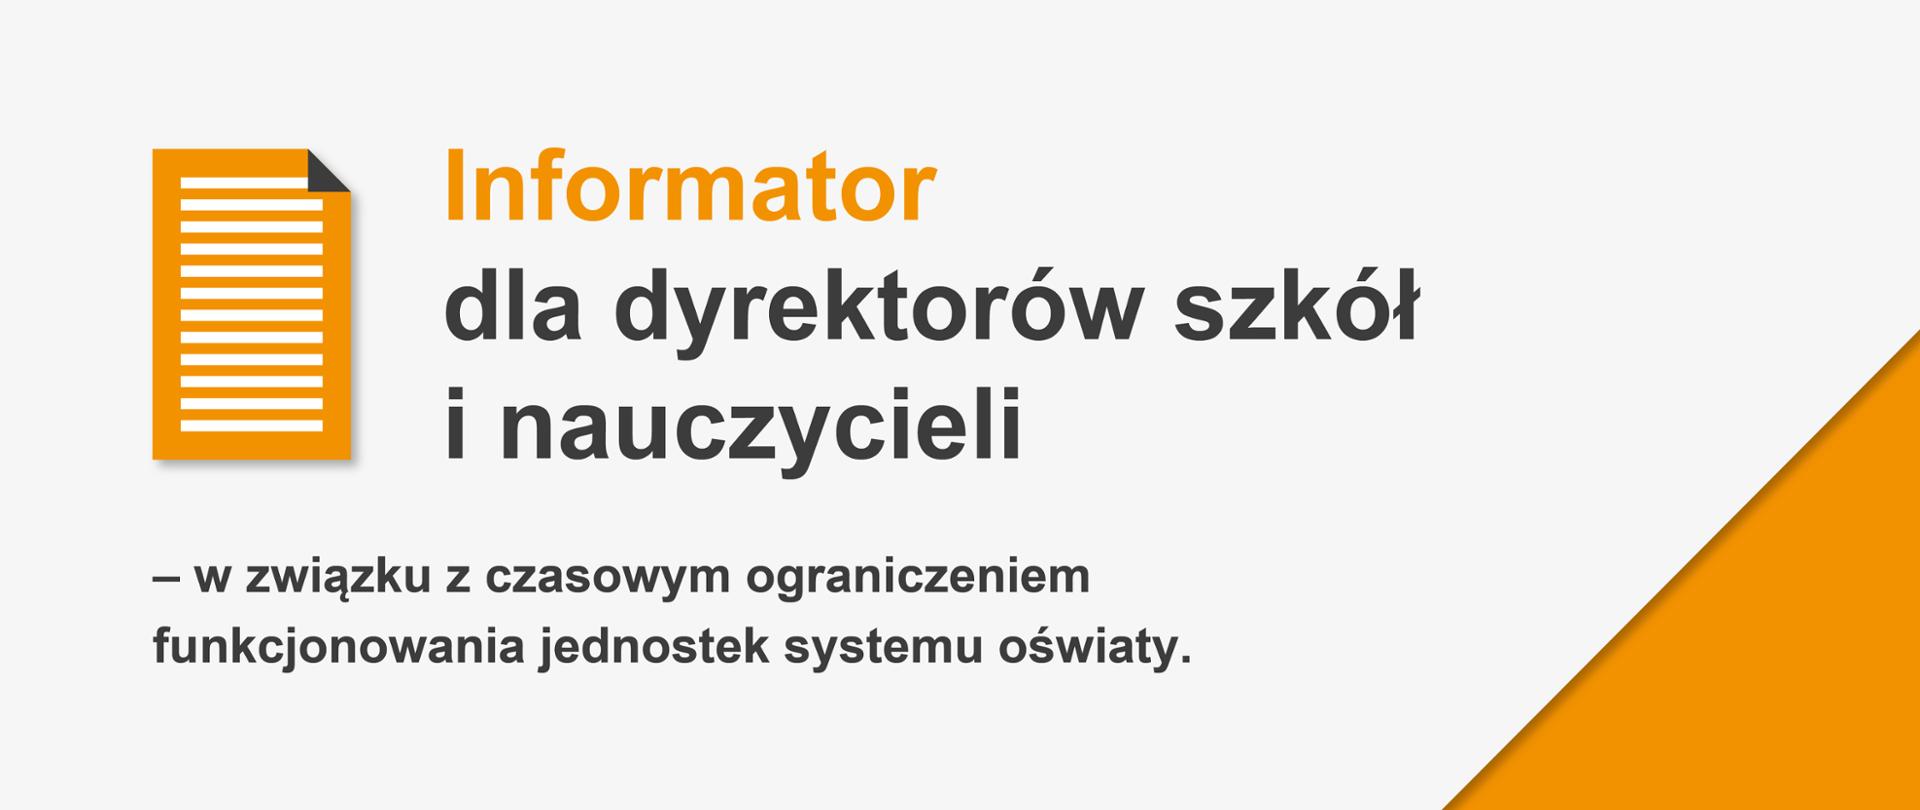 Szaro-pomarańczowe tło, ikona dokumentu po lewej stronie i tekst: "Informator dla dyrektorów szkół i nauczycieli – w związku z czasowym ograniczeniem funkcjonowania jednostek systemu oświaty."